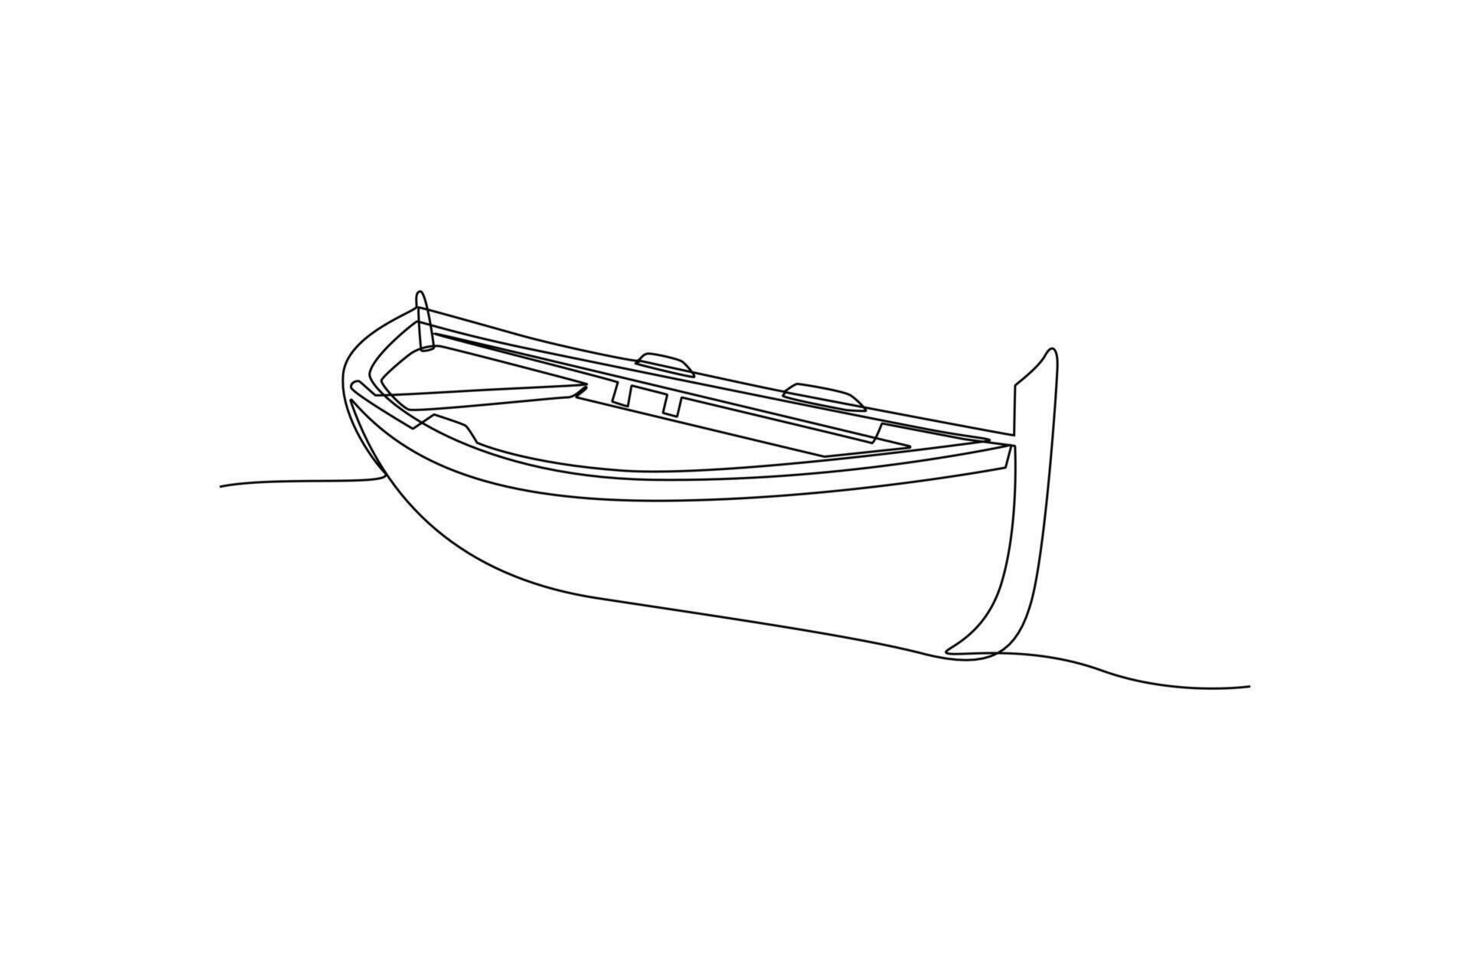 ett kontinuerlig linje teckning av hav transport begrepp. klotter vektor illustration i enkel linjär stil.